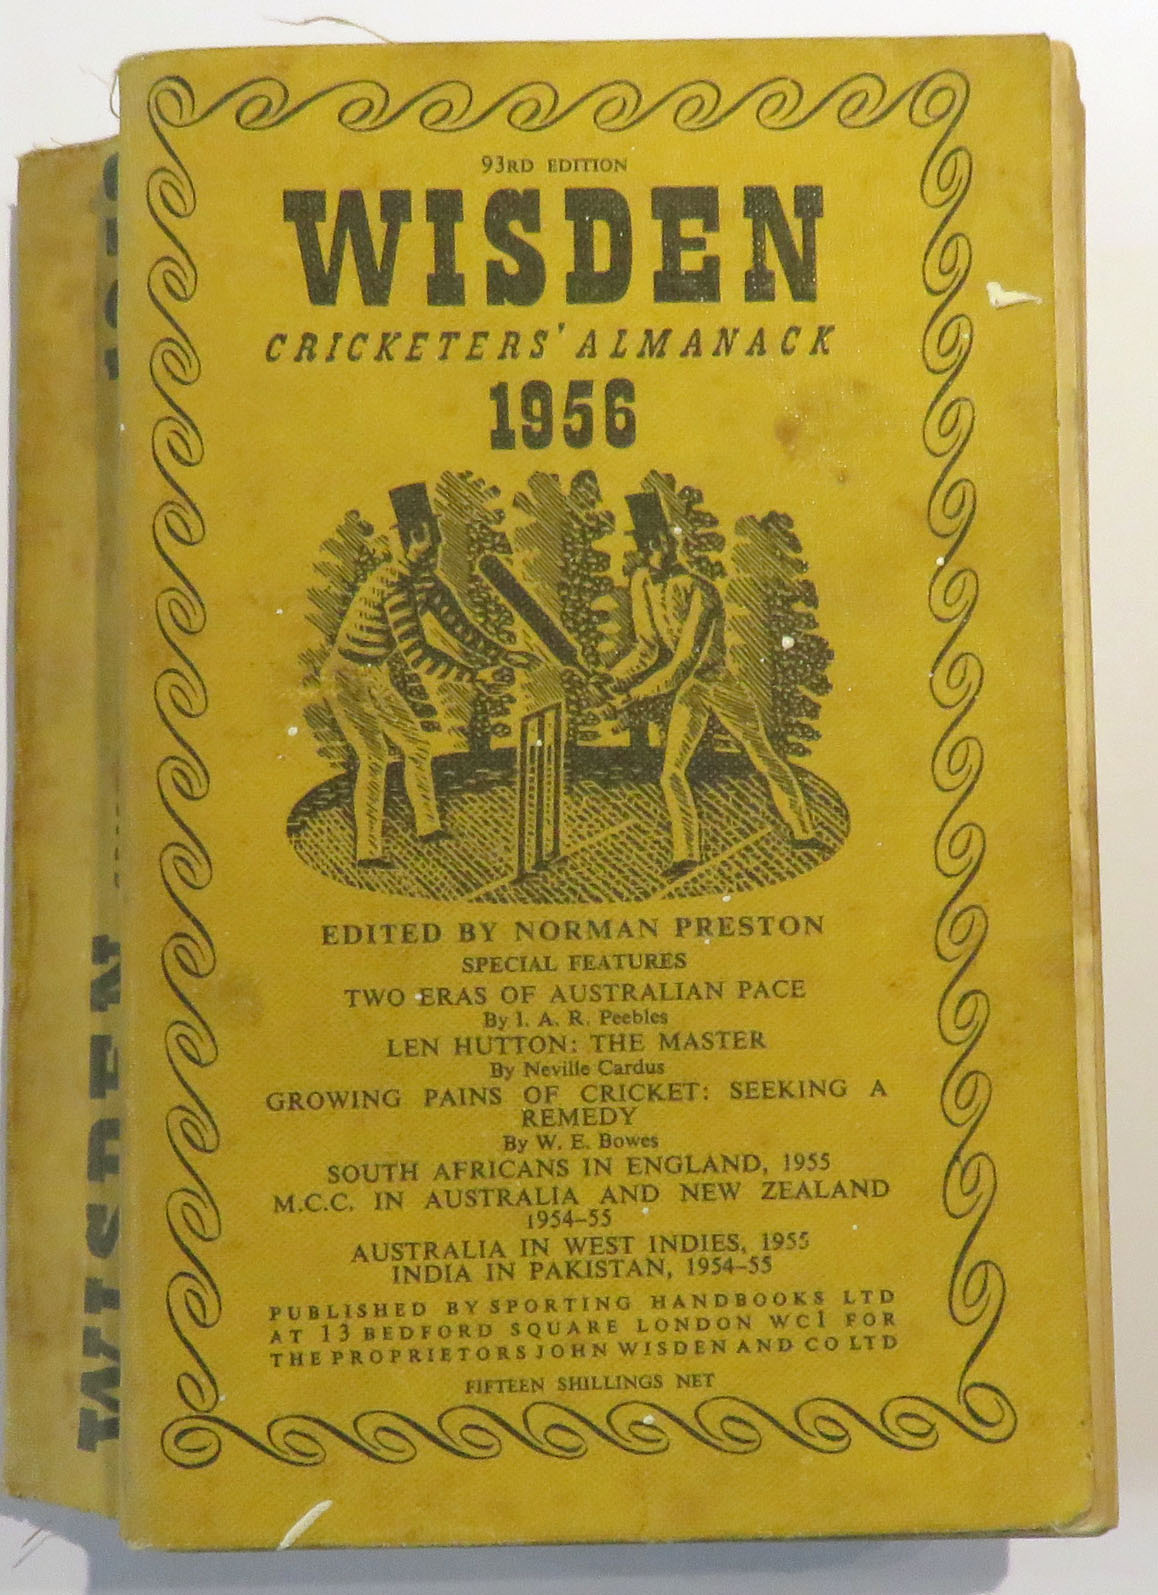 Wisden Cricketers' Almanack 1956